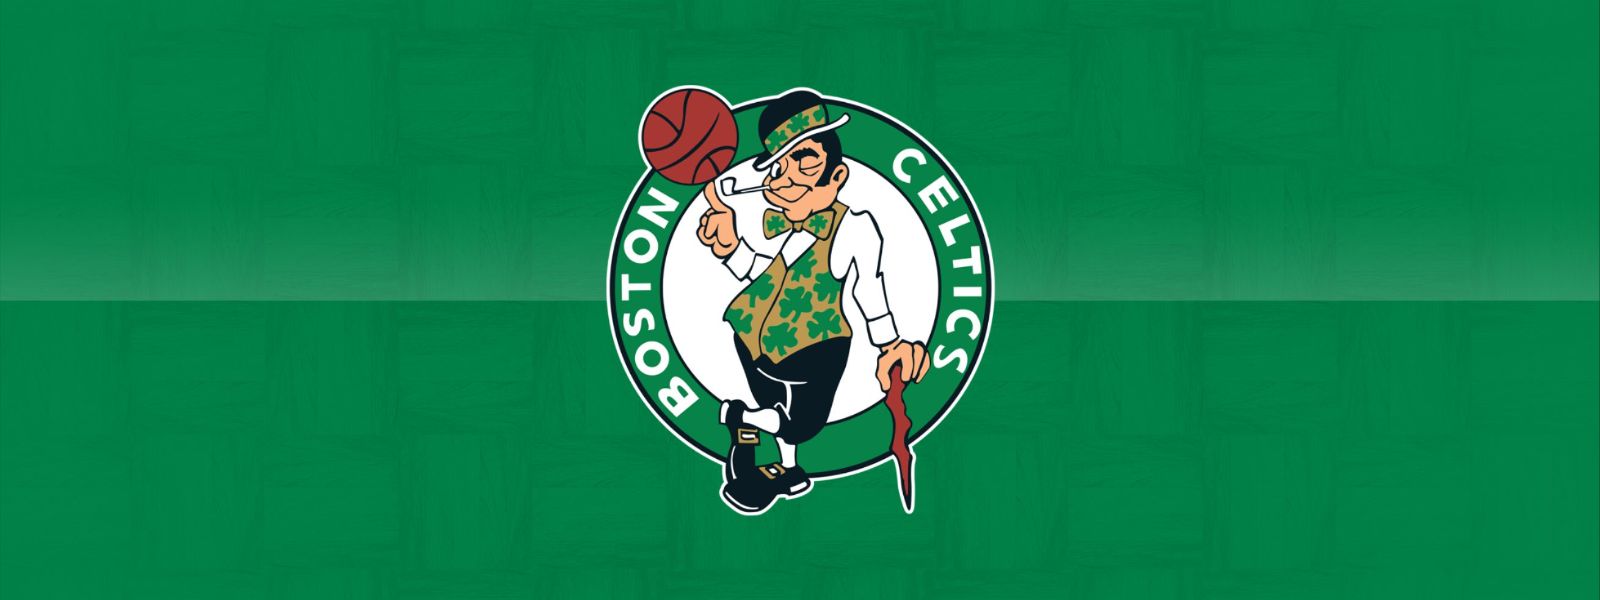 Celtics vs. Hornets 